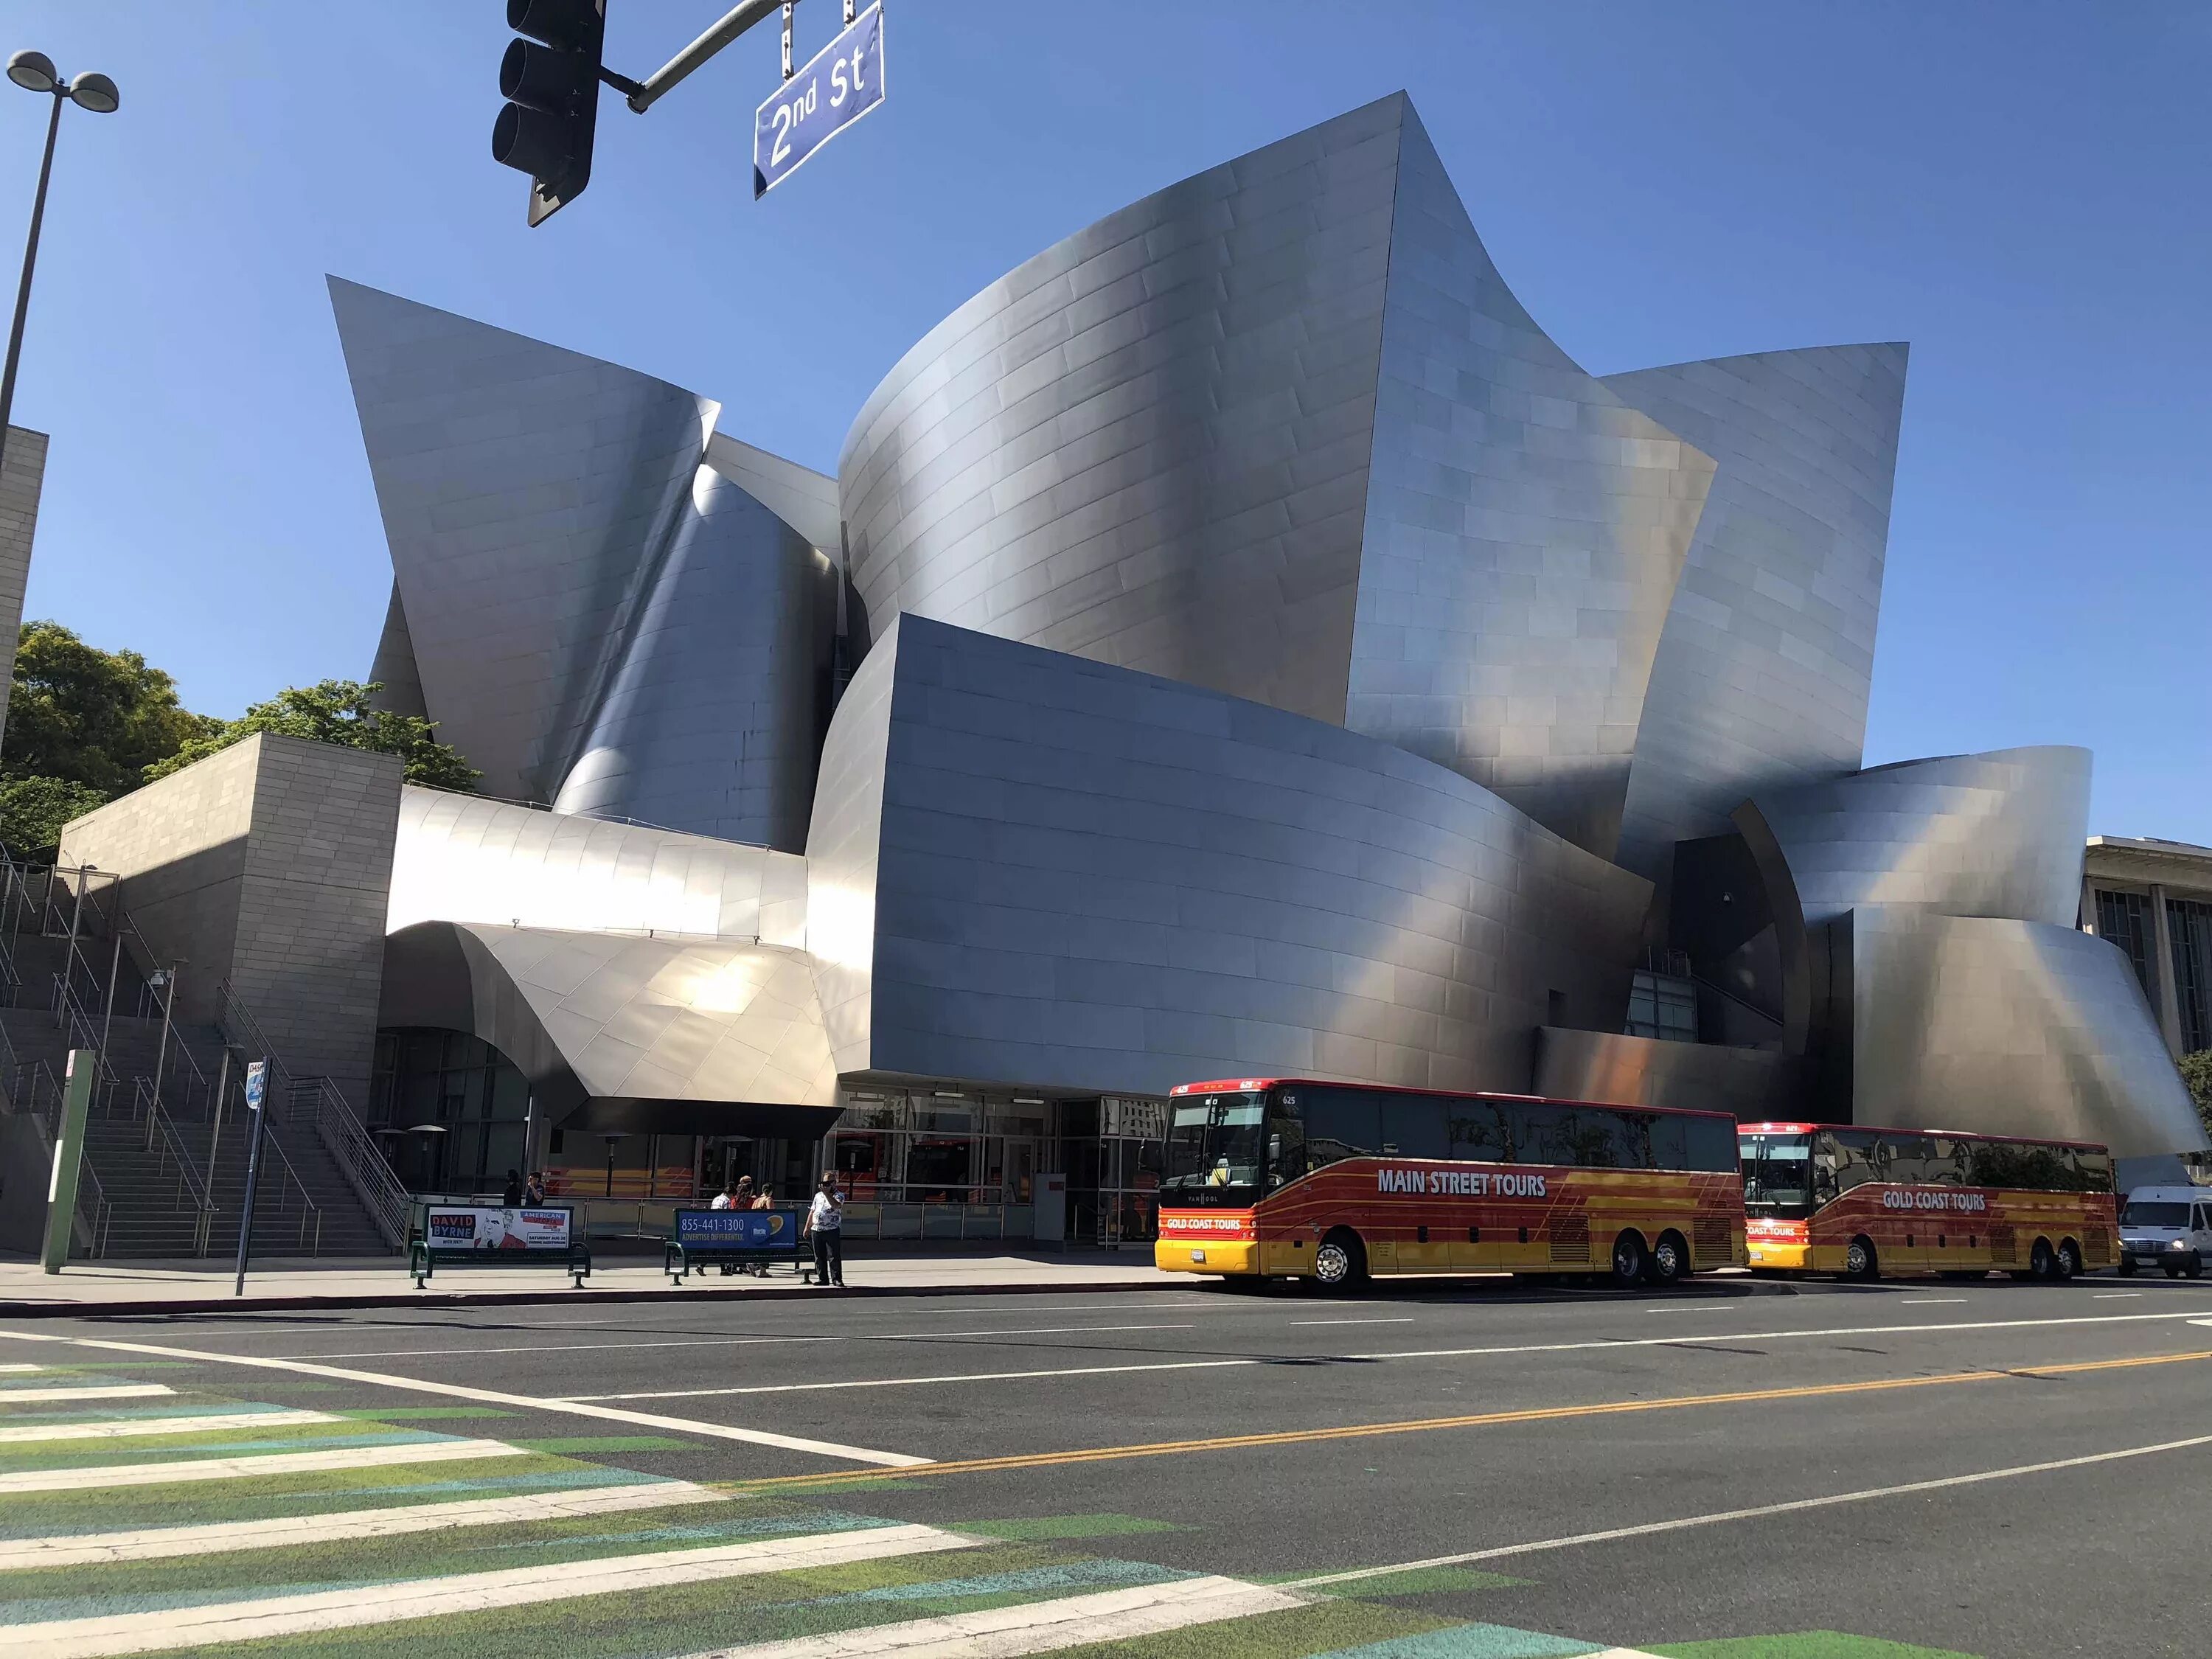 Концертный зал дисней. Концертный зал «Дисней» в Лос-Анджелес. Концертный зал Уолта Диснея в Лос-Анджелесе. Фрэнк Гери концертный зал Уолта Диснея. Концертный зал Уолта Диснея в Лос-Анджелесе архитектура.